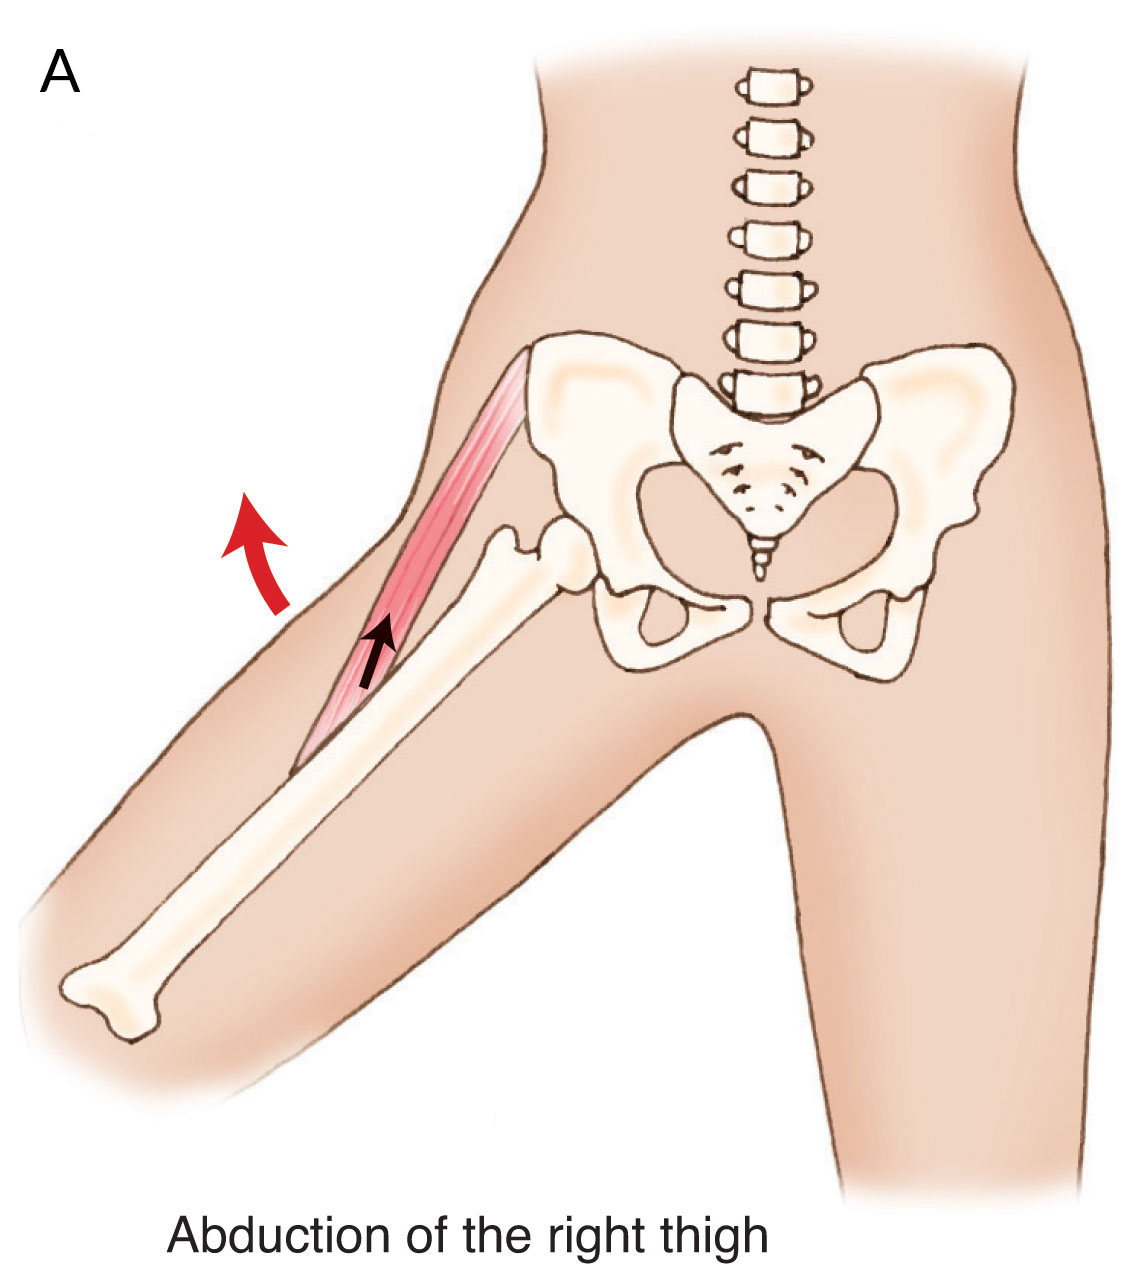 Abduction de la cuisse au niveau de l'articulation de la hanche